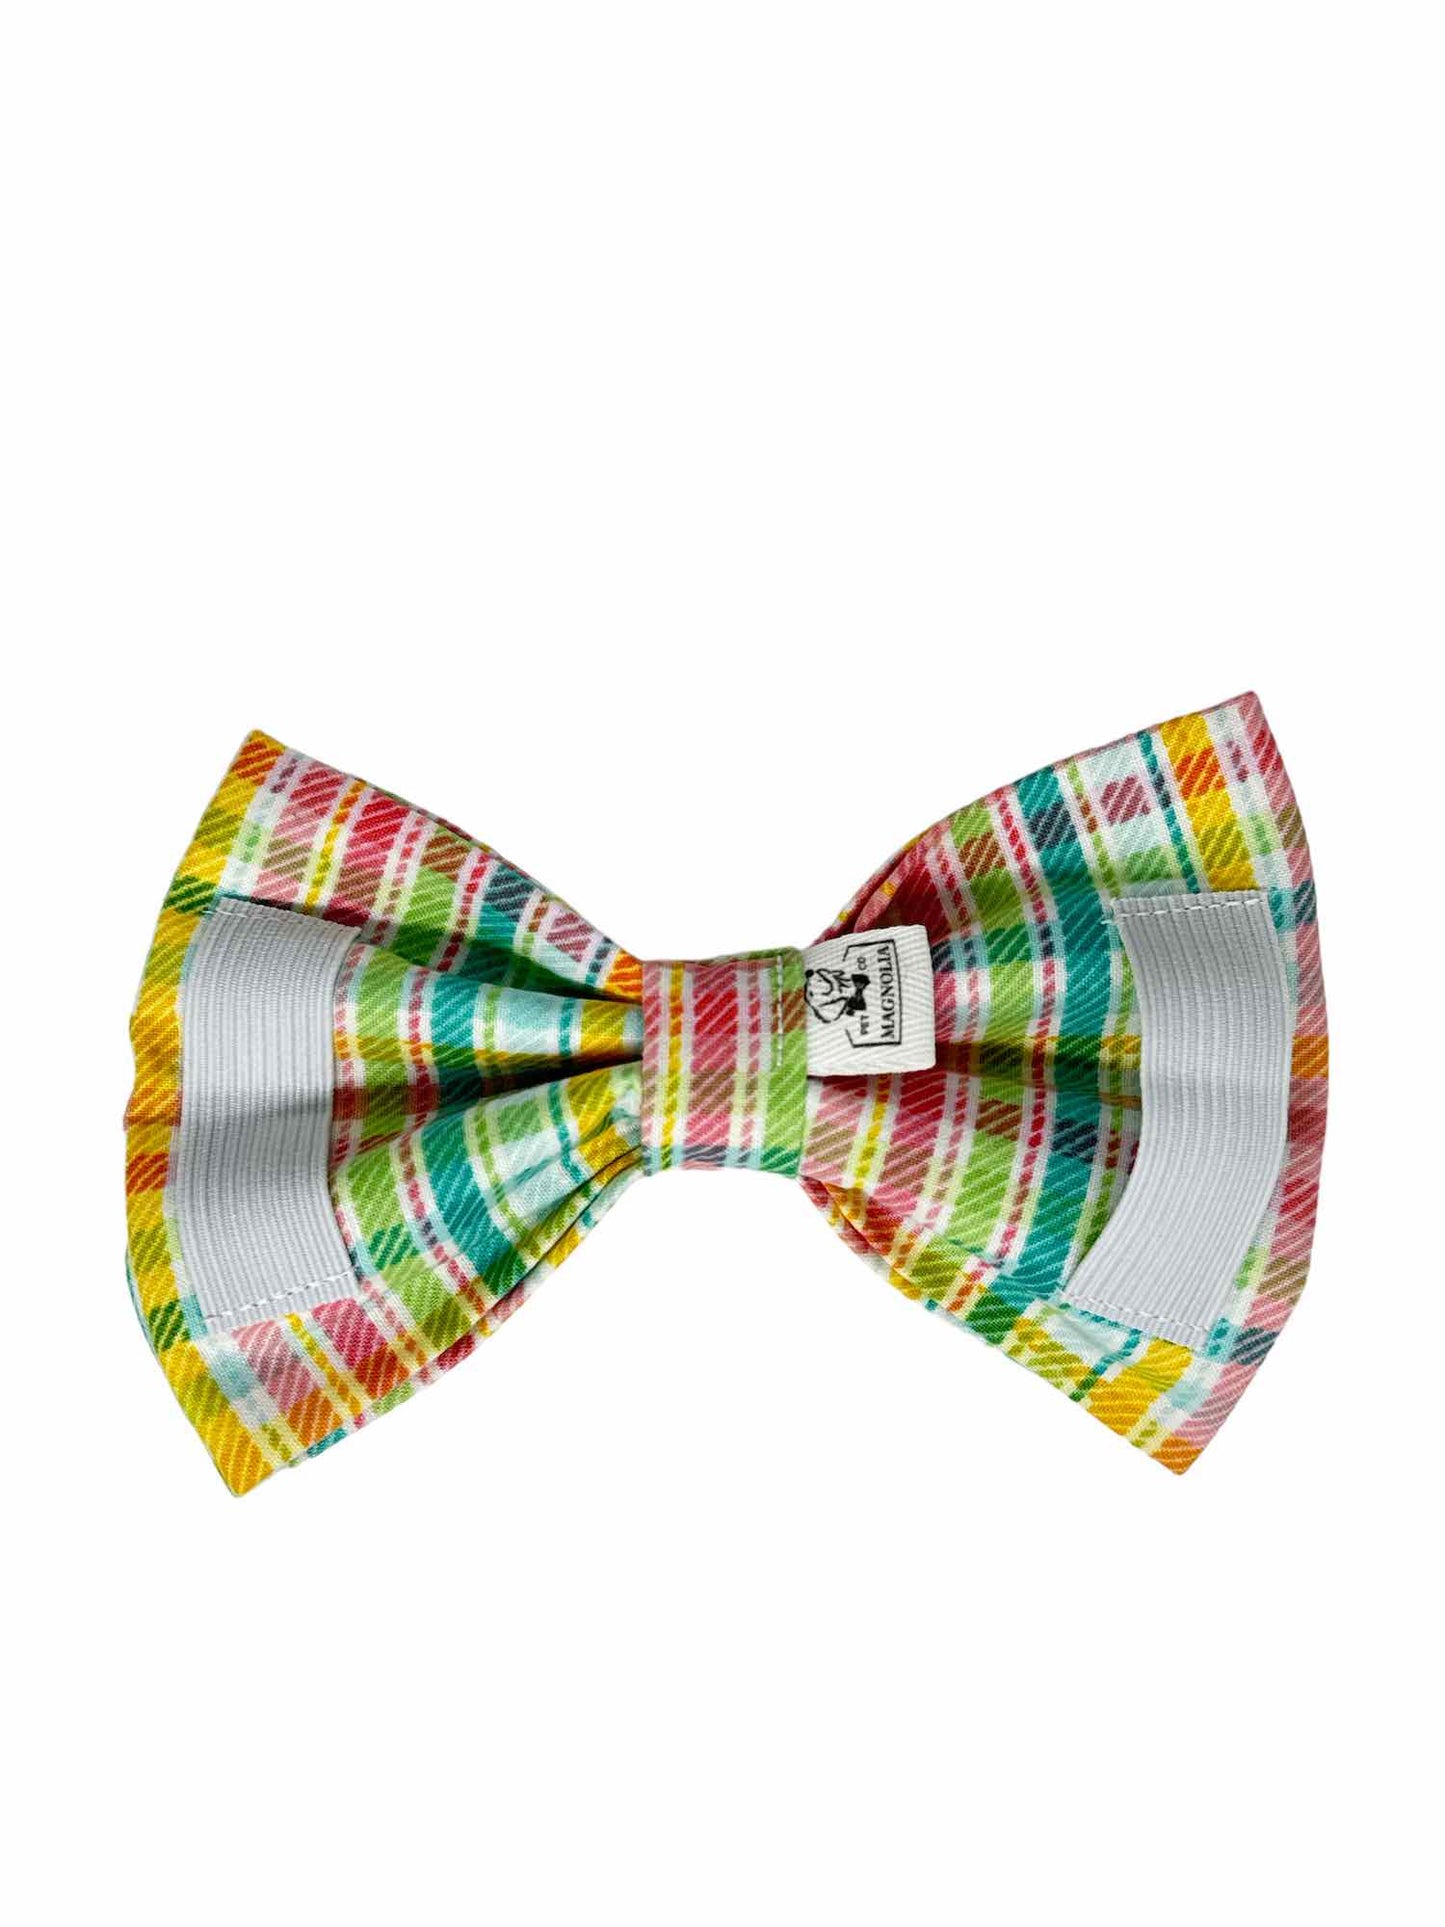 Springtime Bonnet Parade Bow Tie